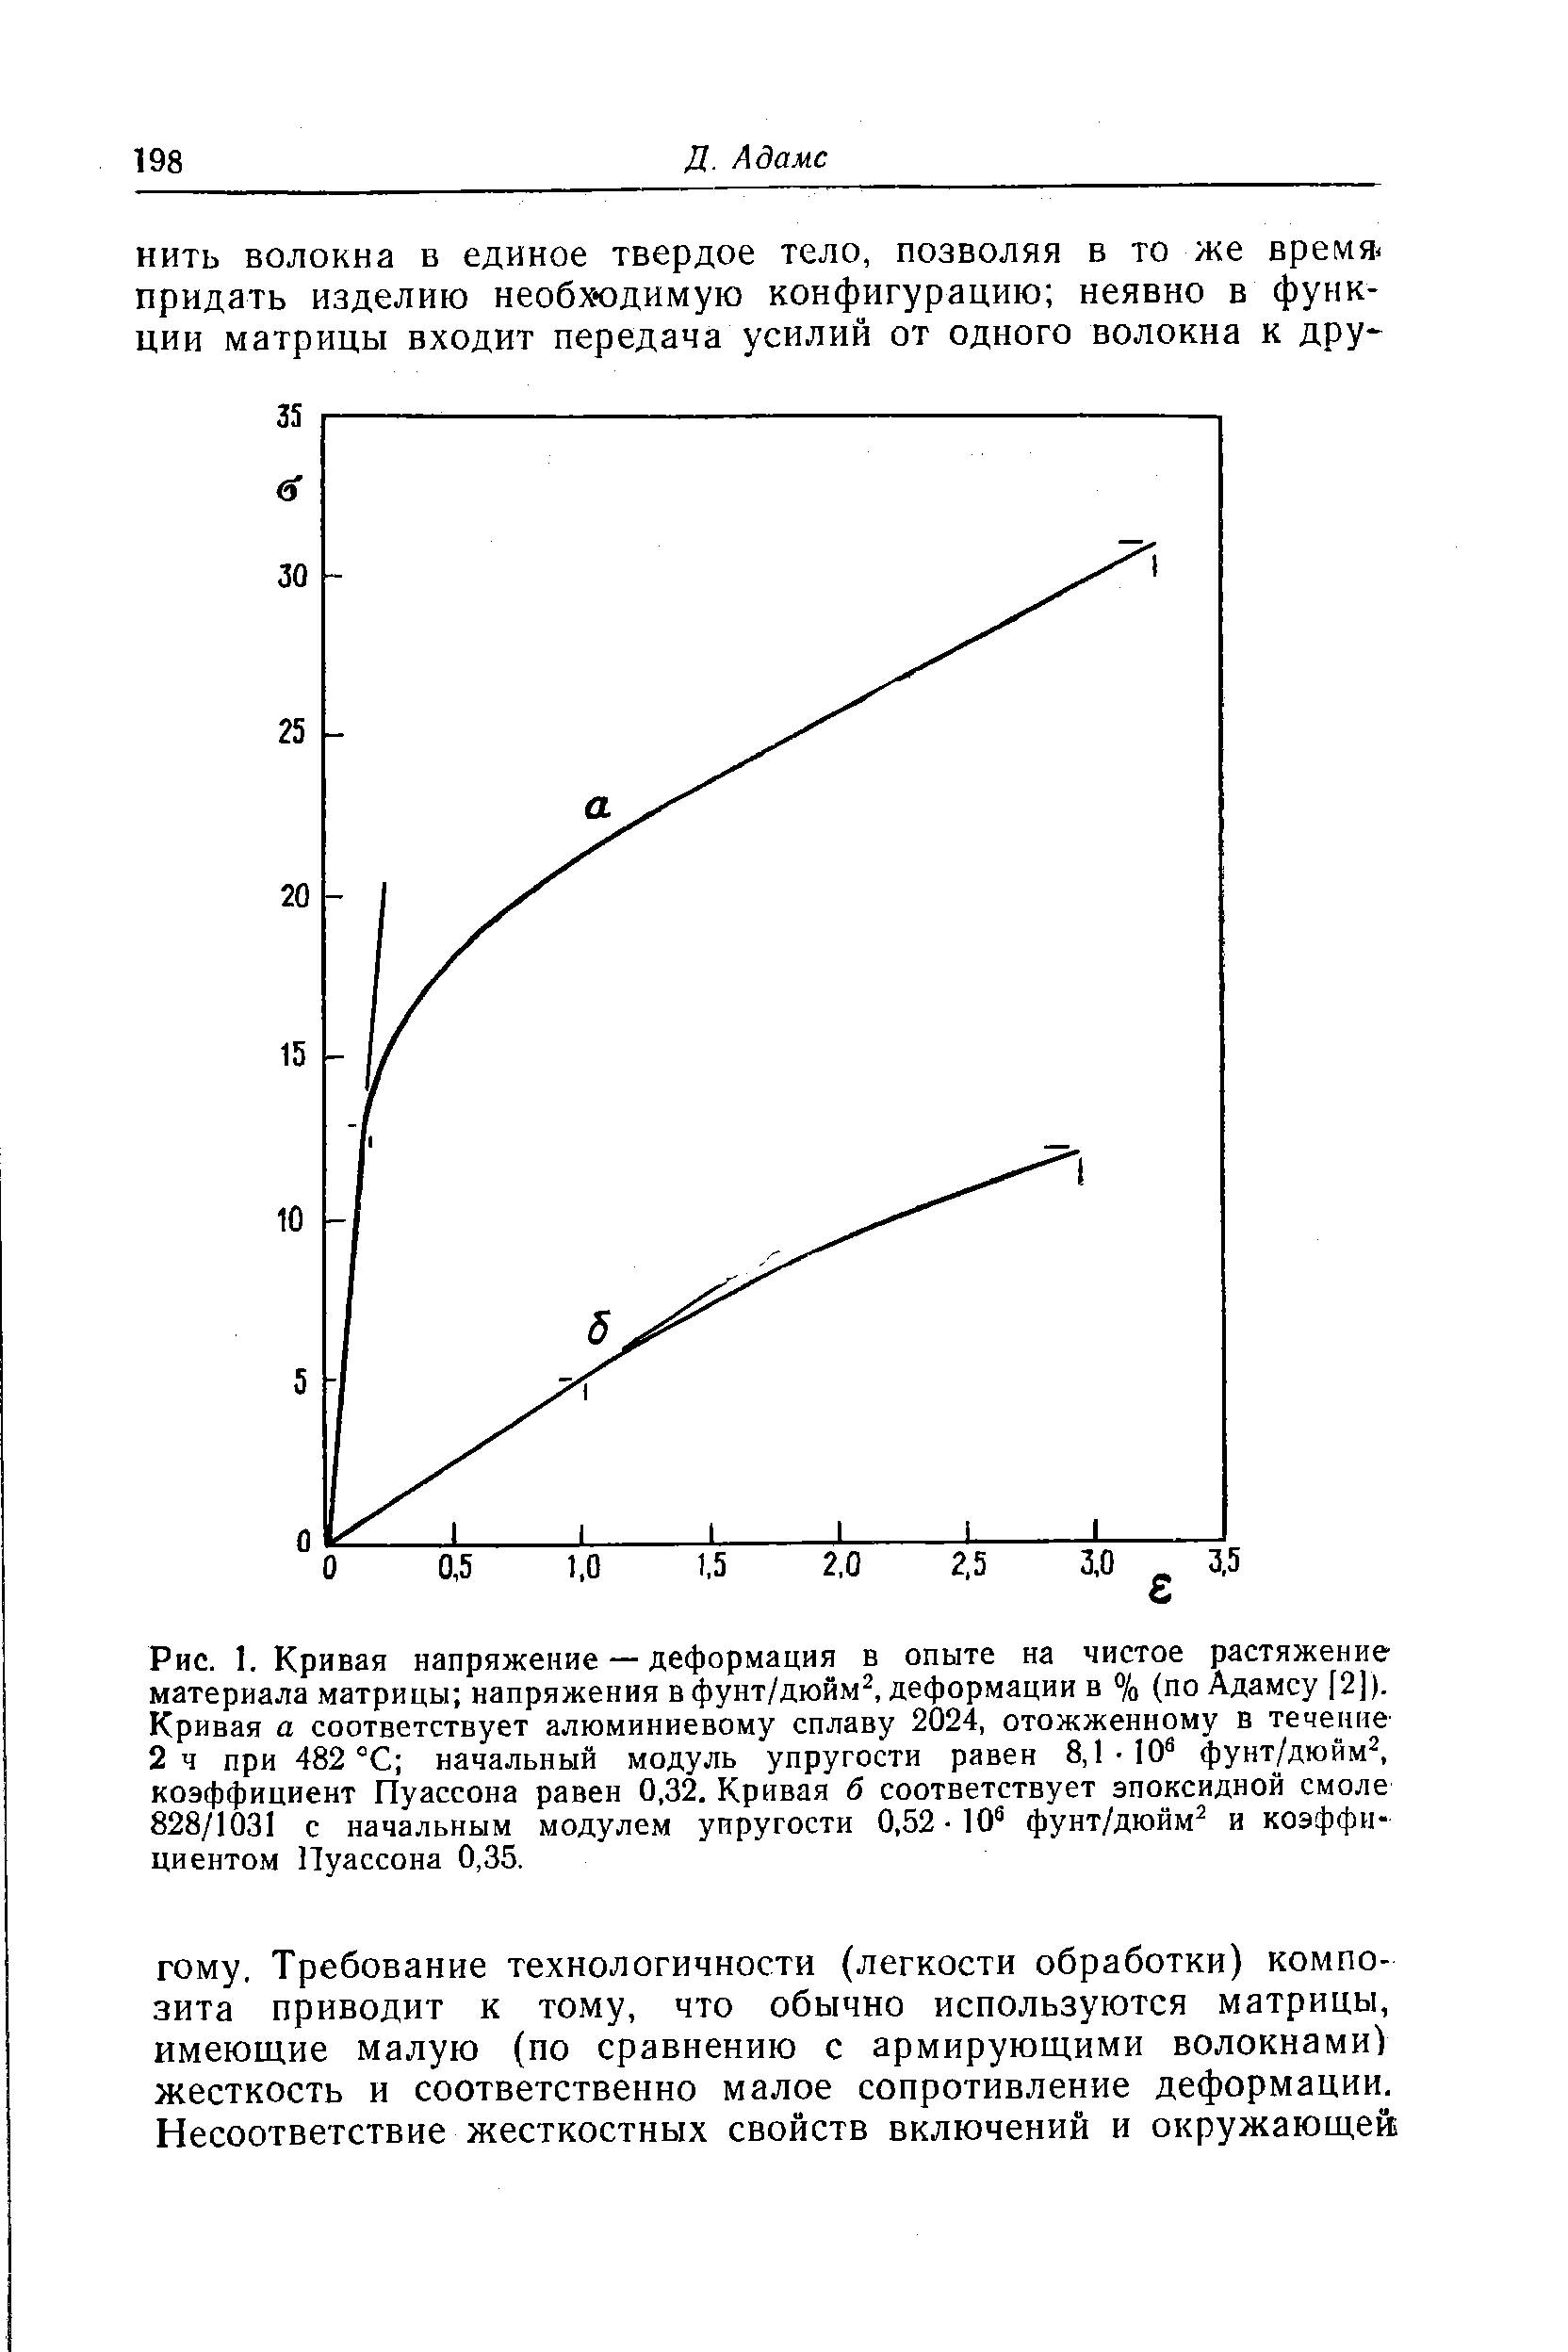 Рис. 1. Кривая напряжение — деформация в опыте на чистое растяжение материала матрицы напряжения вфунт/дюйм , деформации в % (по Адамсу [2]). Кривая а соответствует алюминиевому сплаву 2024, отожженному в течение 2 ч при 482 °С начальный модуль упругости равен 8,1-10 фунт/дюйм , коэффициент Пуассона равен 0,32. Кривая б соответствует эпоксидной смоле 828/1031 с начальным модулем упругости 0,52 10 фунт/дюйм и коэффициентом Пуассона 0,35.
